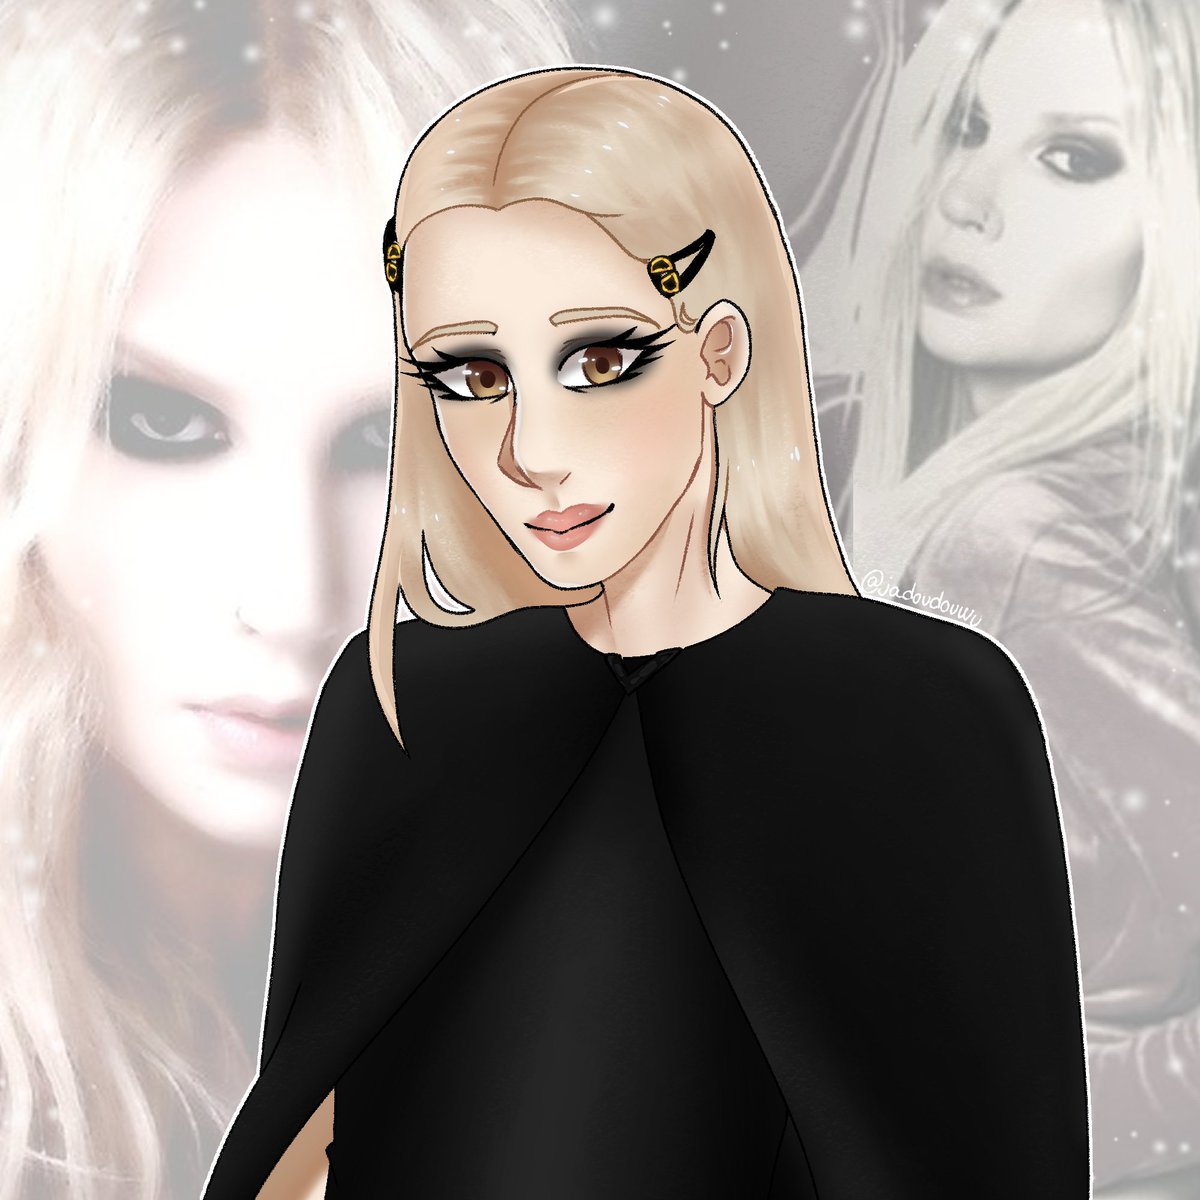 Fanart of Britney Manson!!!! ✨✨ #drawing #dessin #digital #digitalart #art #artist #illustration #fanart